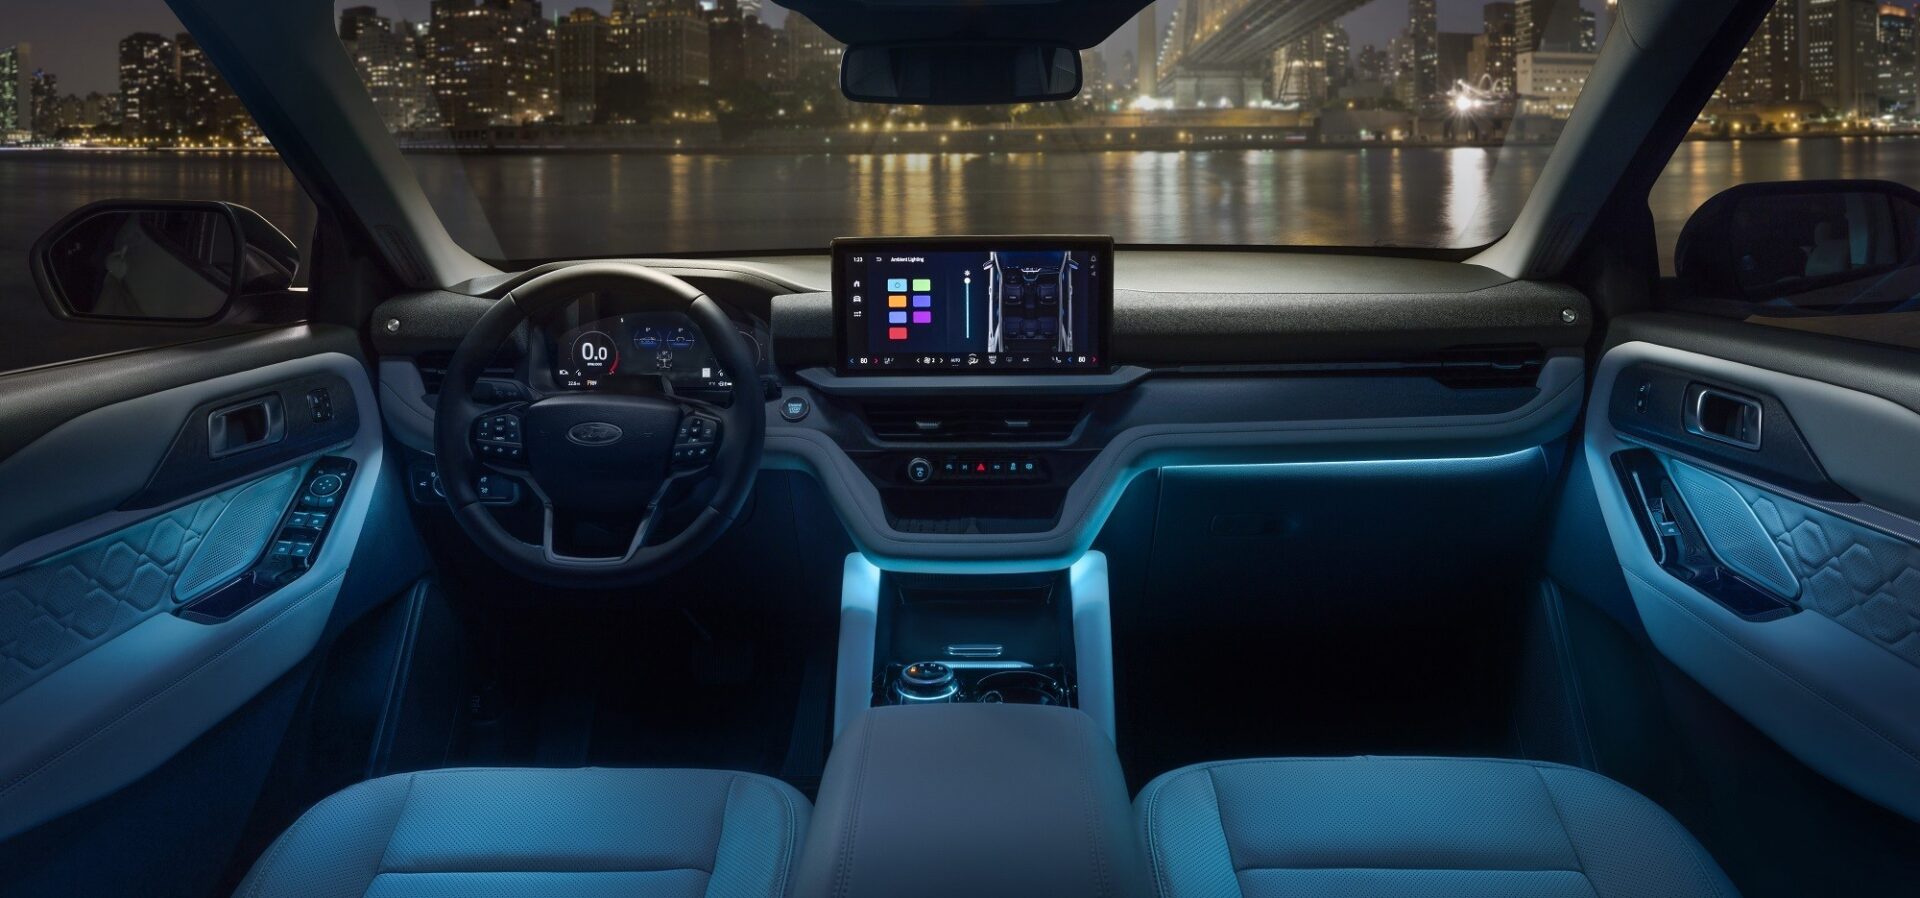 Представлен Ford Explorer 2025 года с массивной новой решеткой радиатора и улучшенными технологиями, доступный весной 2024 года